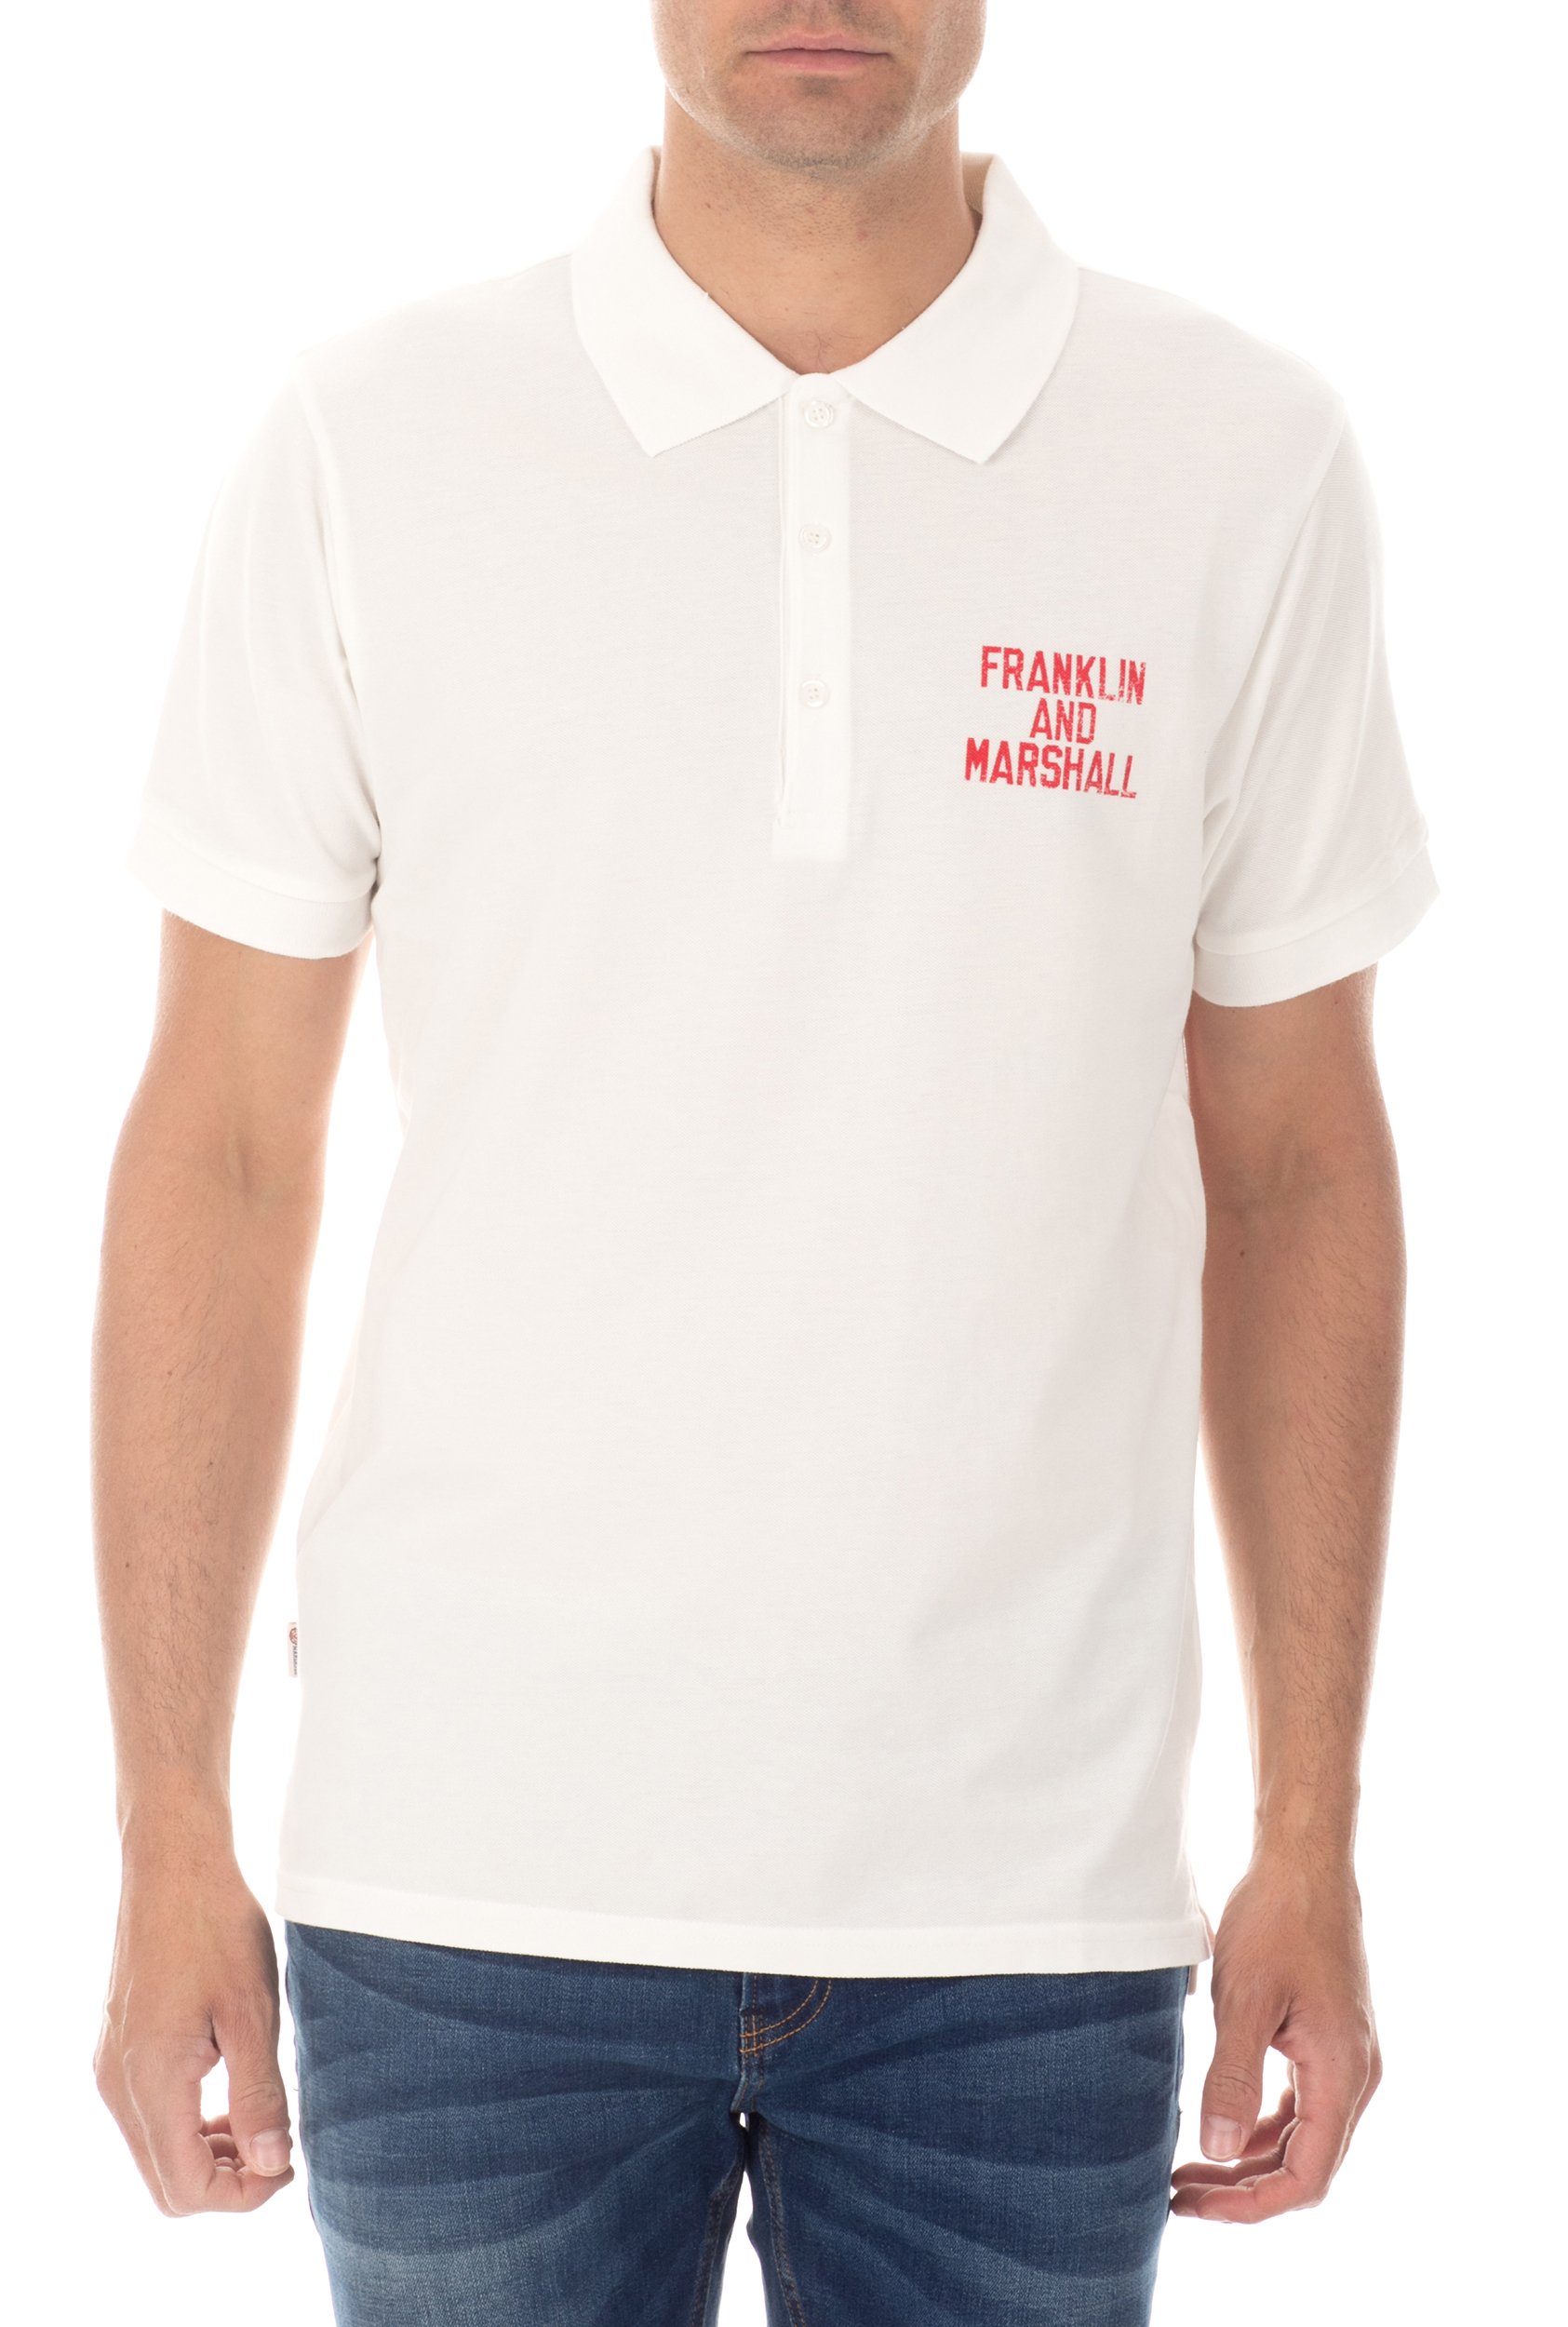 FRANKLIN & MARSHALL - Ανδρική κοντομάνικη μπλούζα polo FRANKLIN & MARSHALL λευκή Ανδρικά/Ρούχα/Μπλούζες/Πόλο